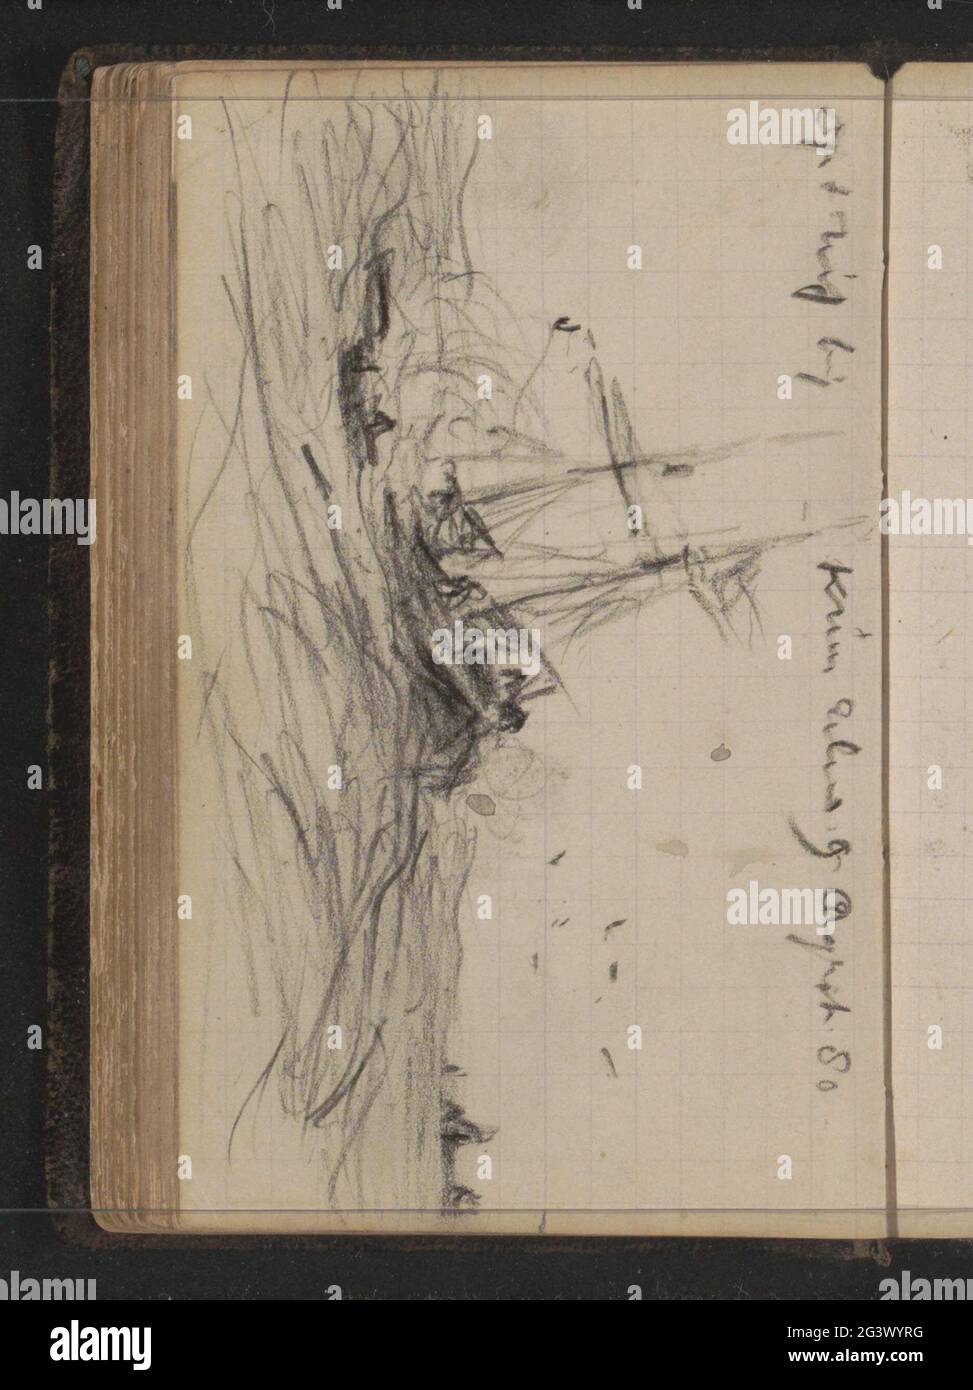 Goletta Willem Barentsz al mare vicino al Kruisbaai, Nova Zembla. Foglia 57 verso da un libro di schizzi con 110 lame significava durante la spedizione a Nova Zembla nel 1880. Foto Stock